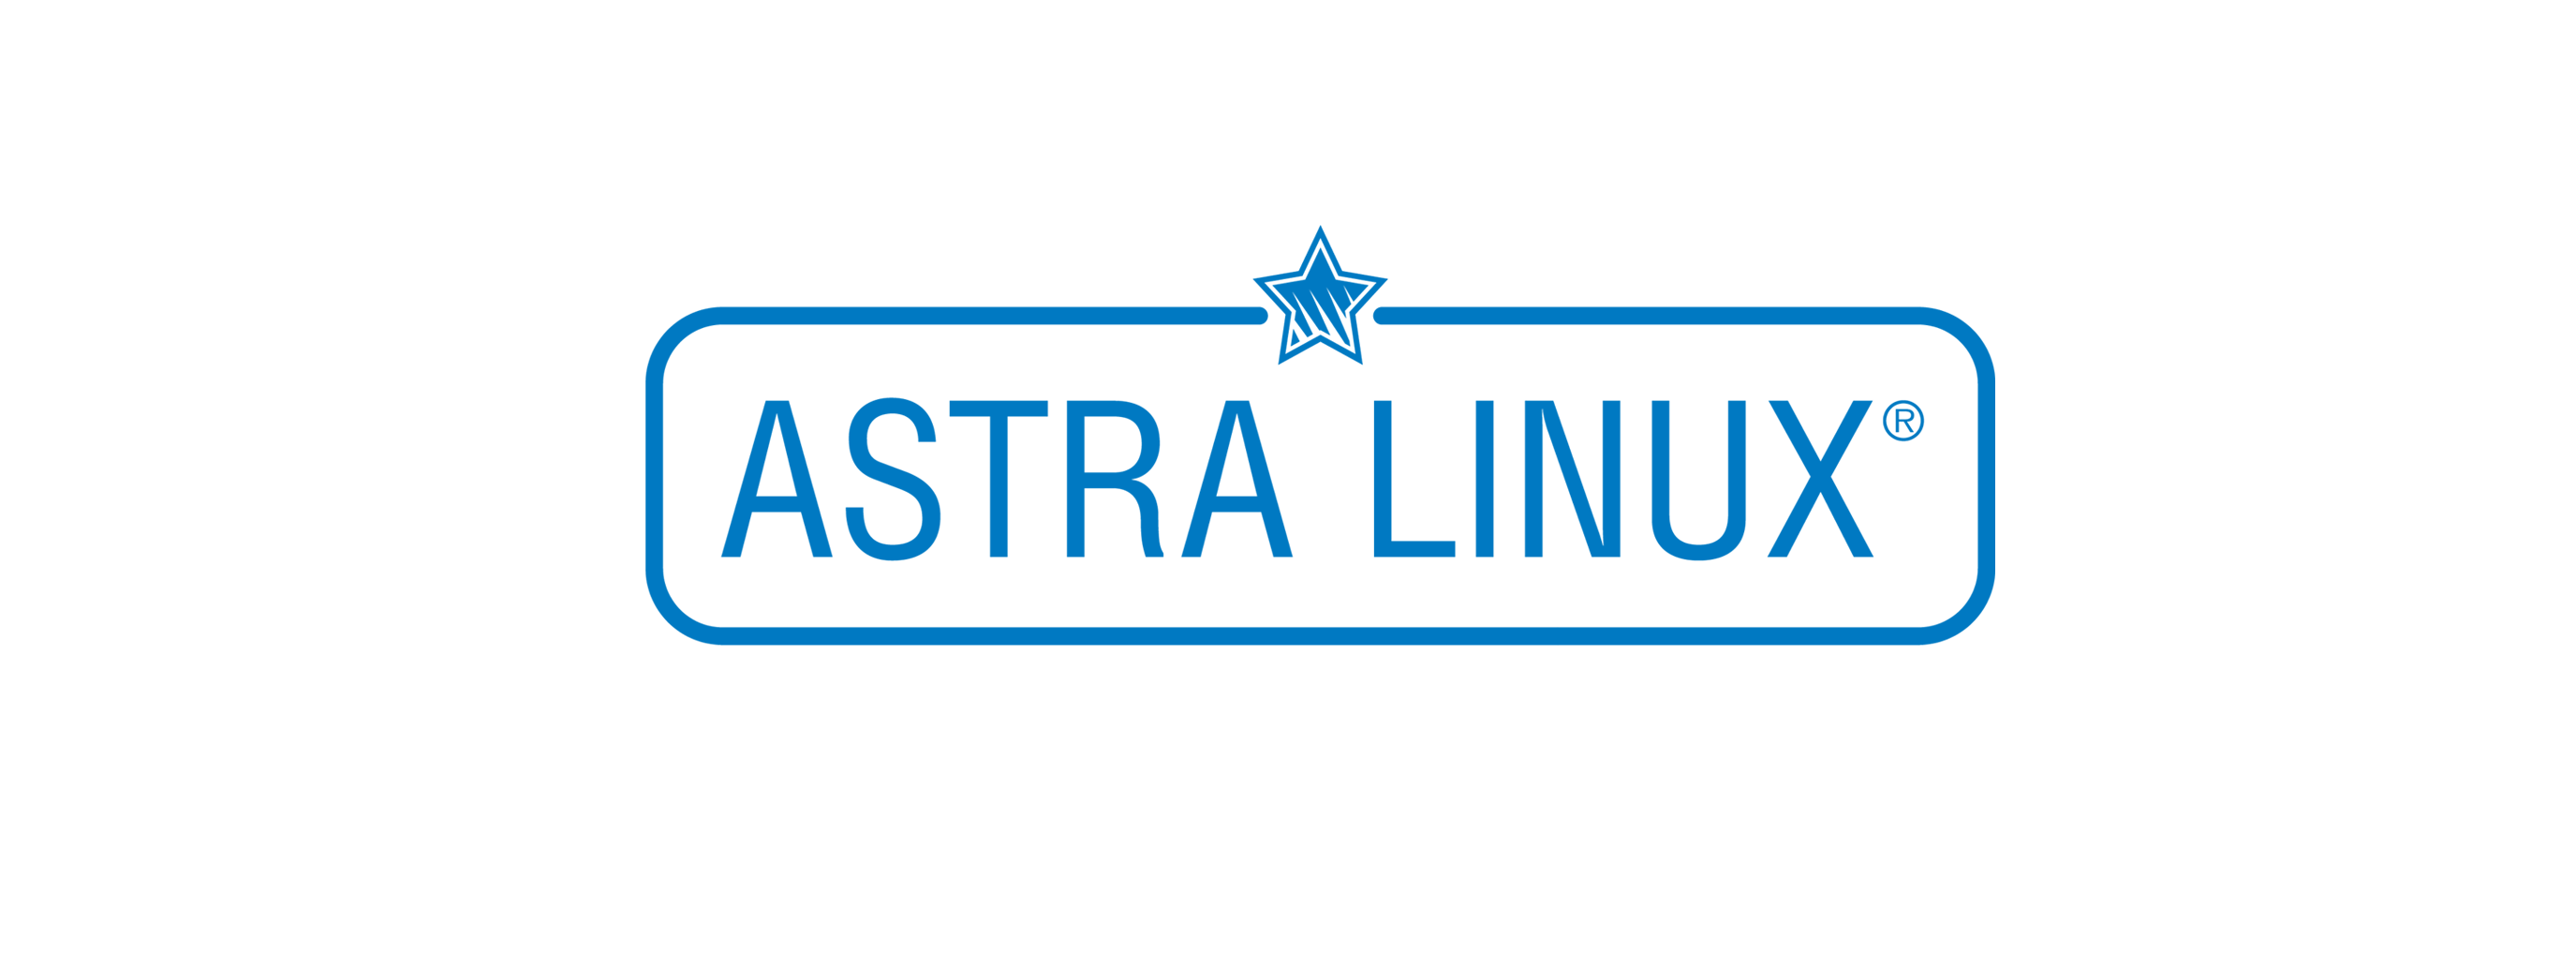 Лицензия РусБИТех Astra Linux Special Edition (очередное обновление 1.7), уровень защищенности Максимальный (Смоленск), РУСБ.10015-01 (ФСТЭК), Russian, на срок действия исключительного права базовая лицензия для сервера до 2 сокетов, электронный ключ (OS2